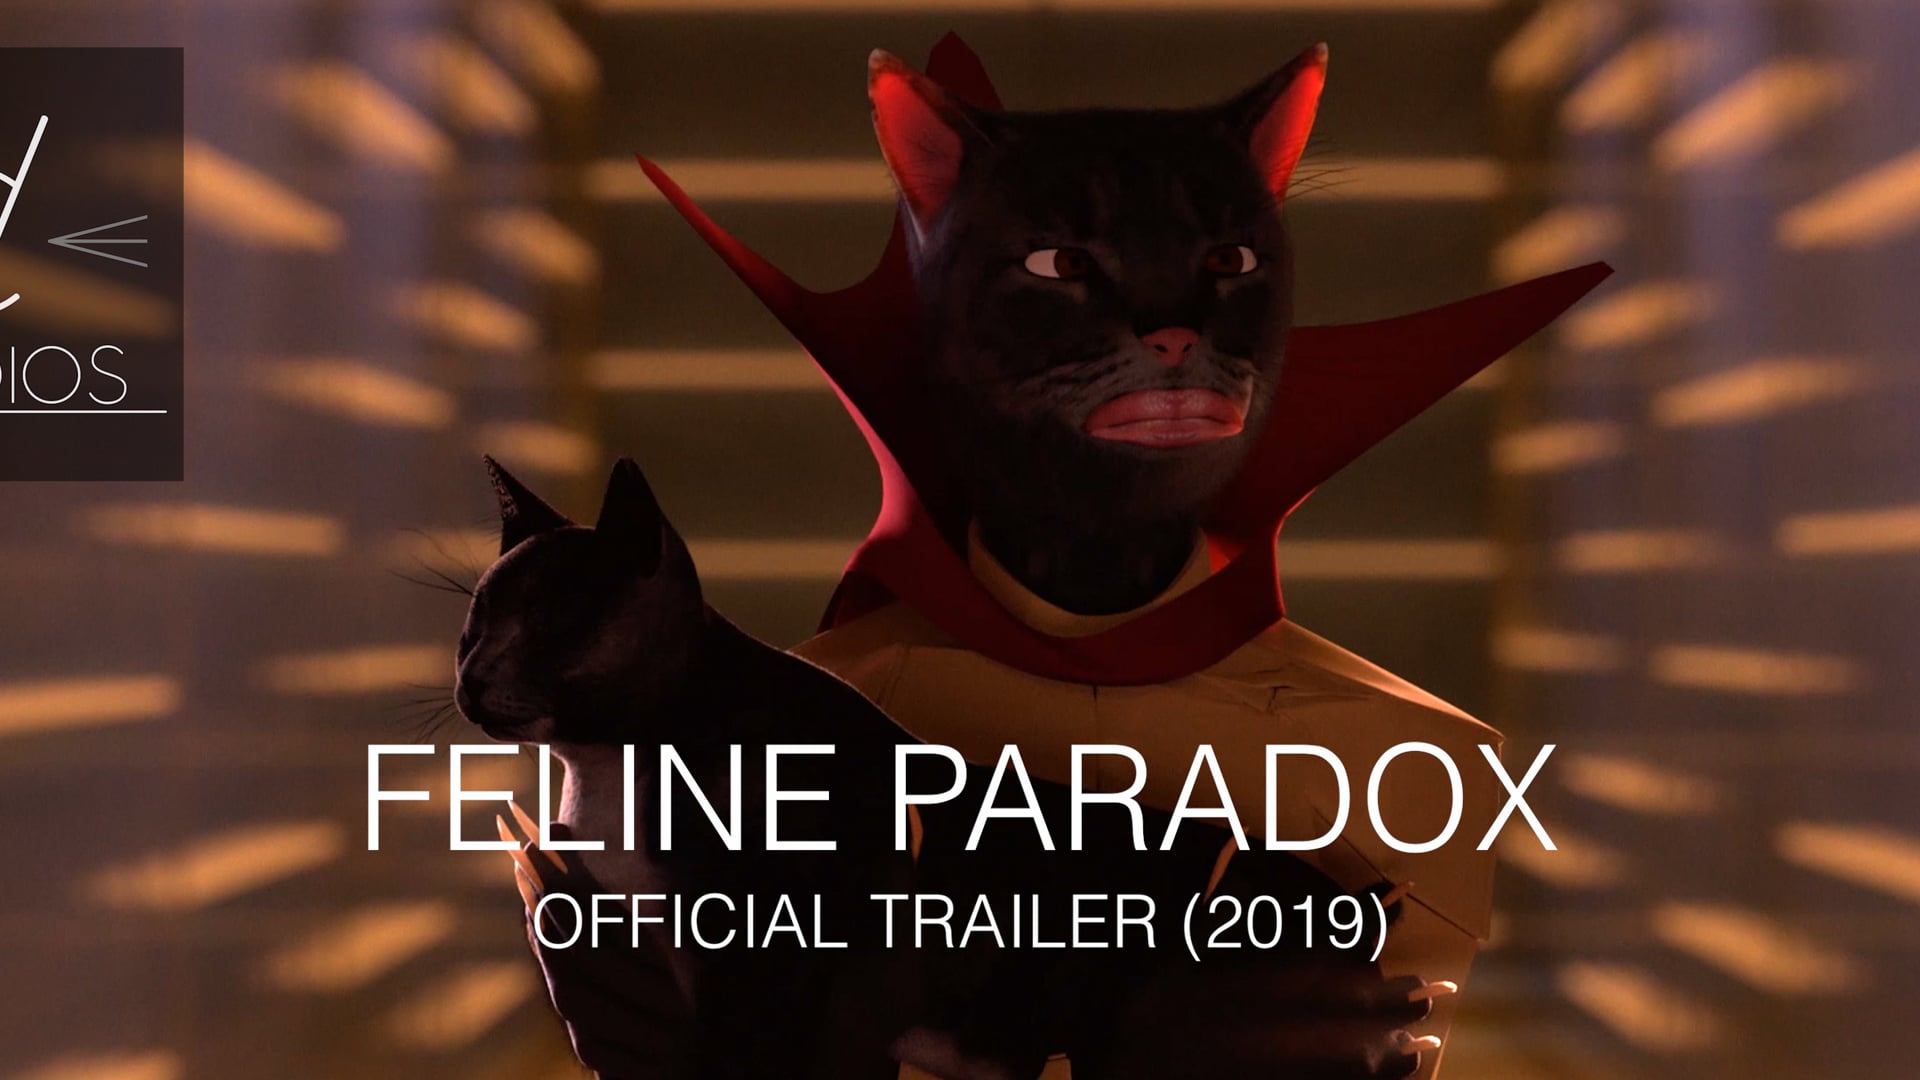 FELINE PARADOX - Official Trailer (2019)